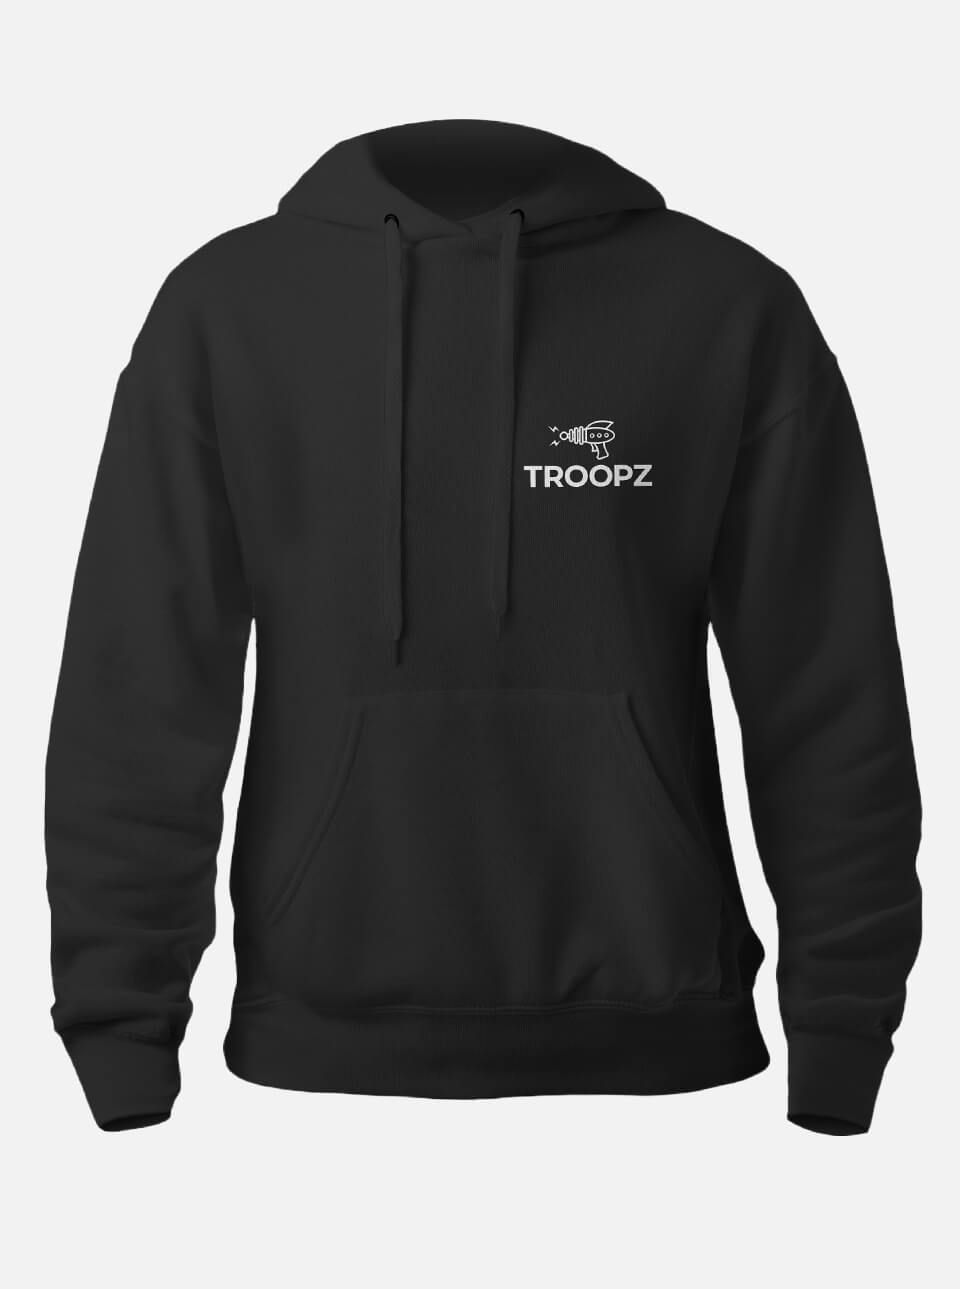 Trooprz Original Hoodie | Black Label Clothing | Trooprz